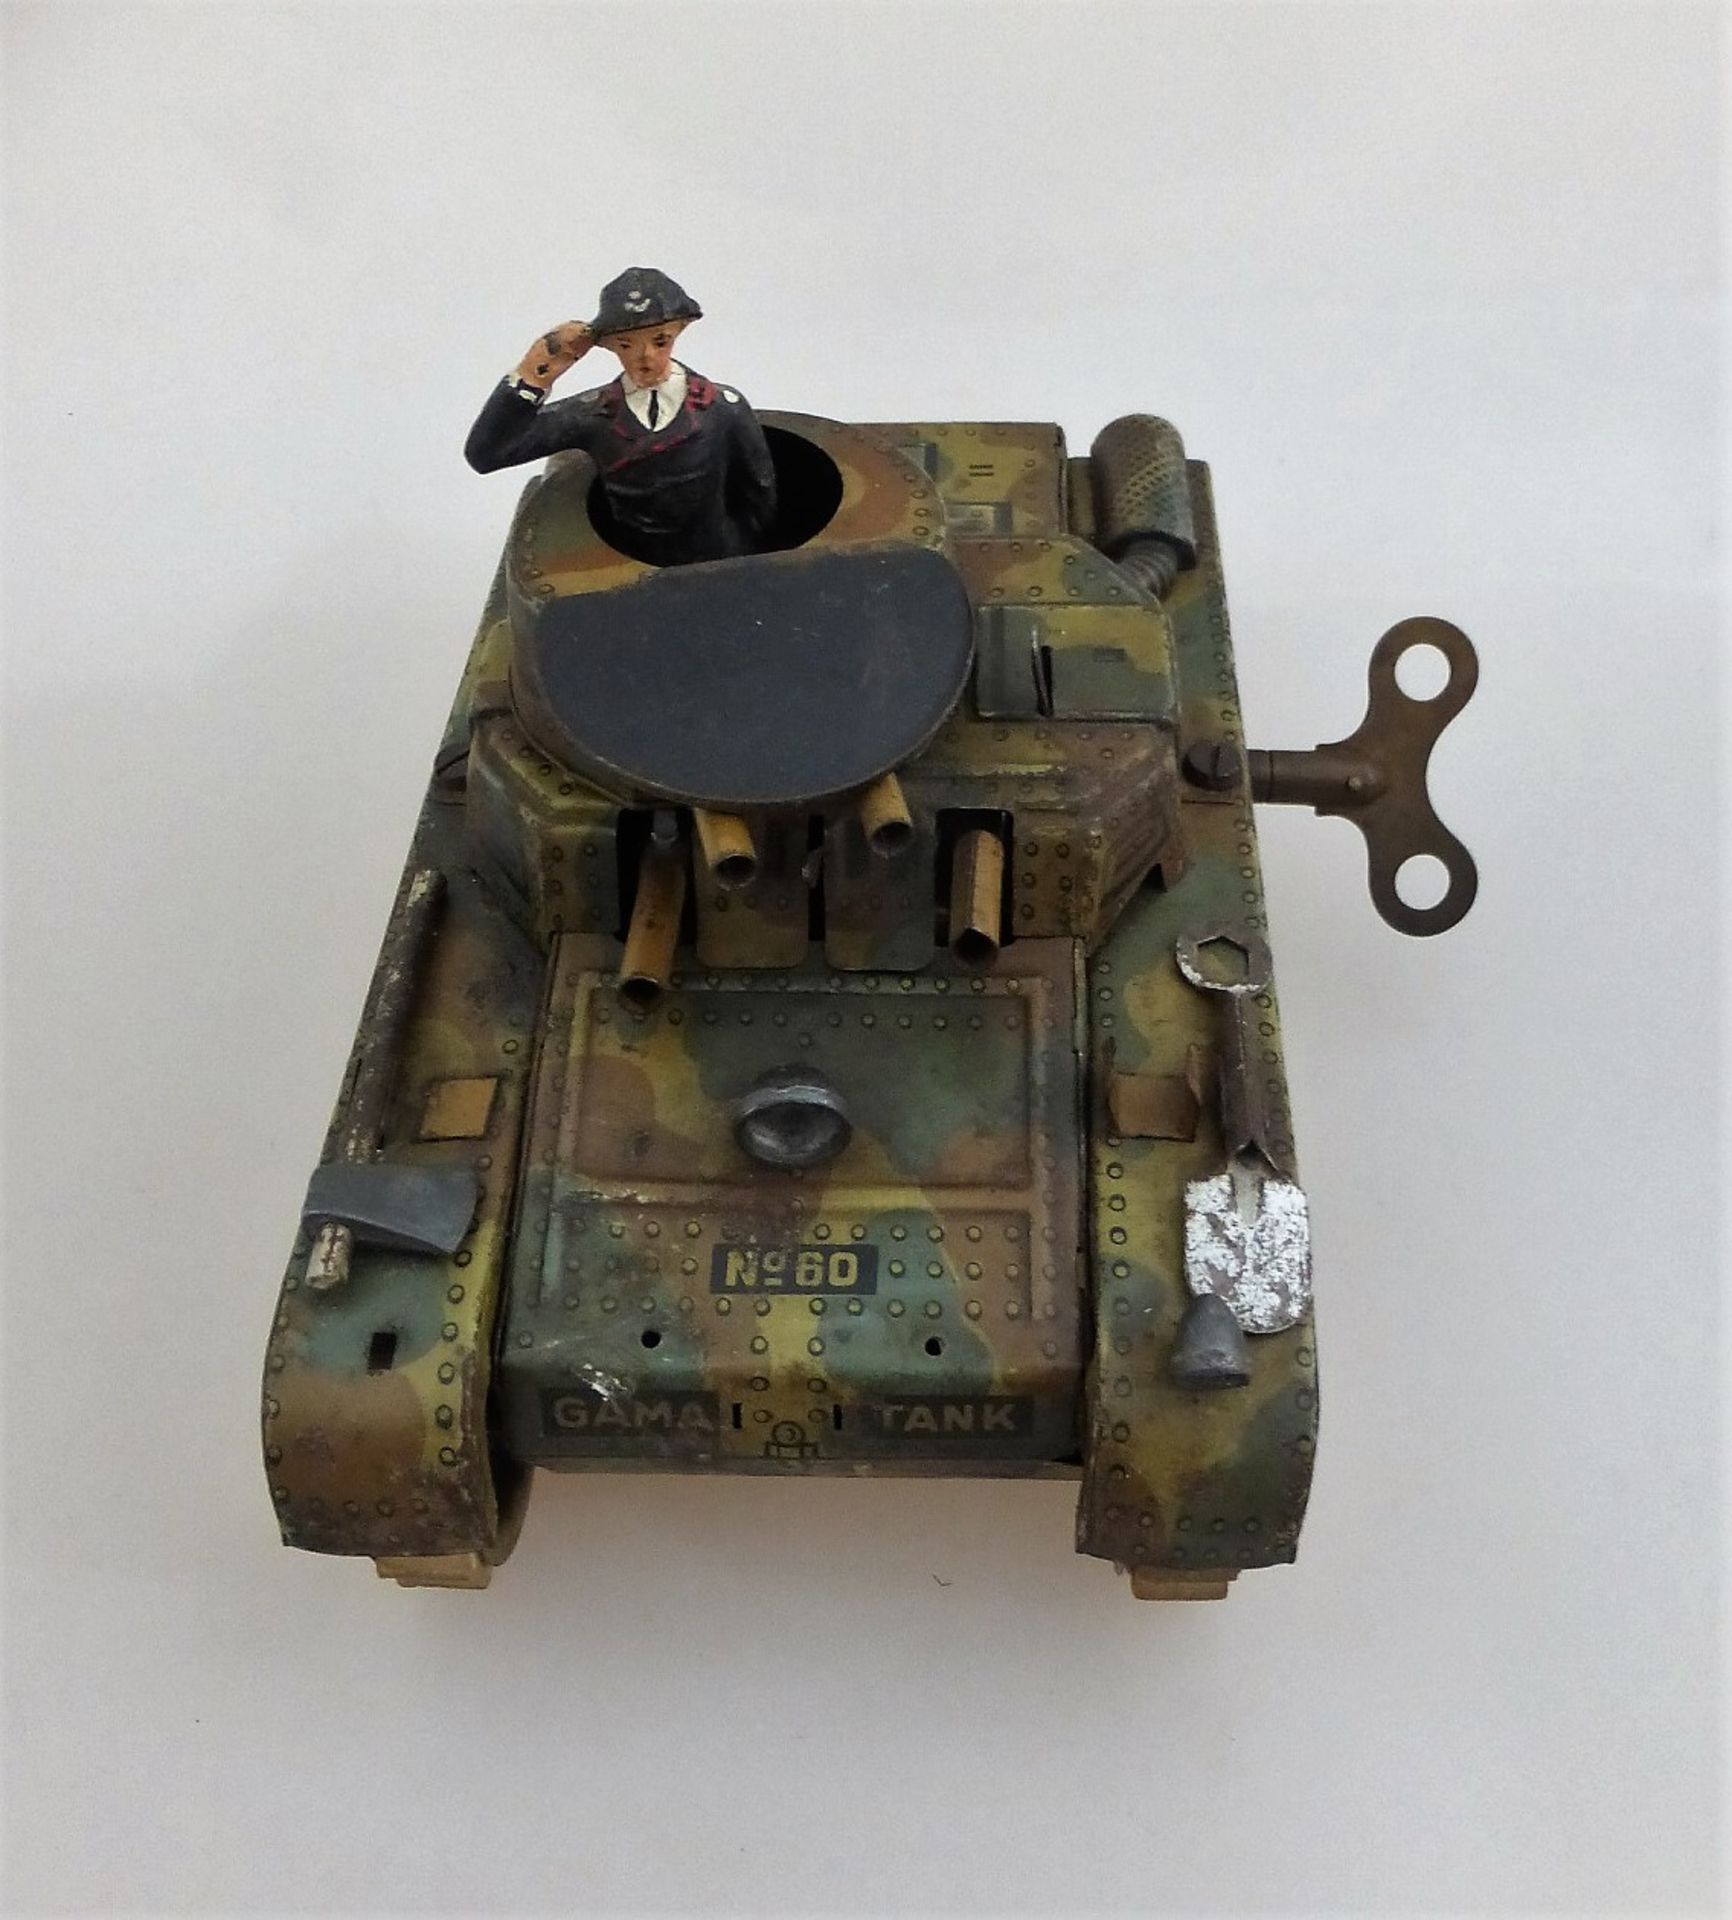 Blechspielzeug, deutsch um 1940, Gama Tank No. 60